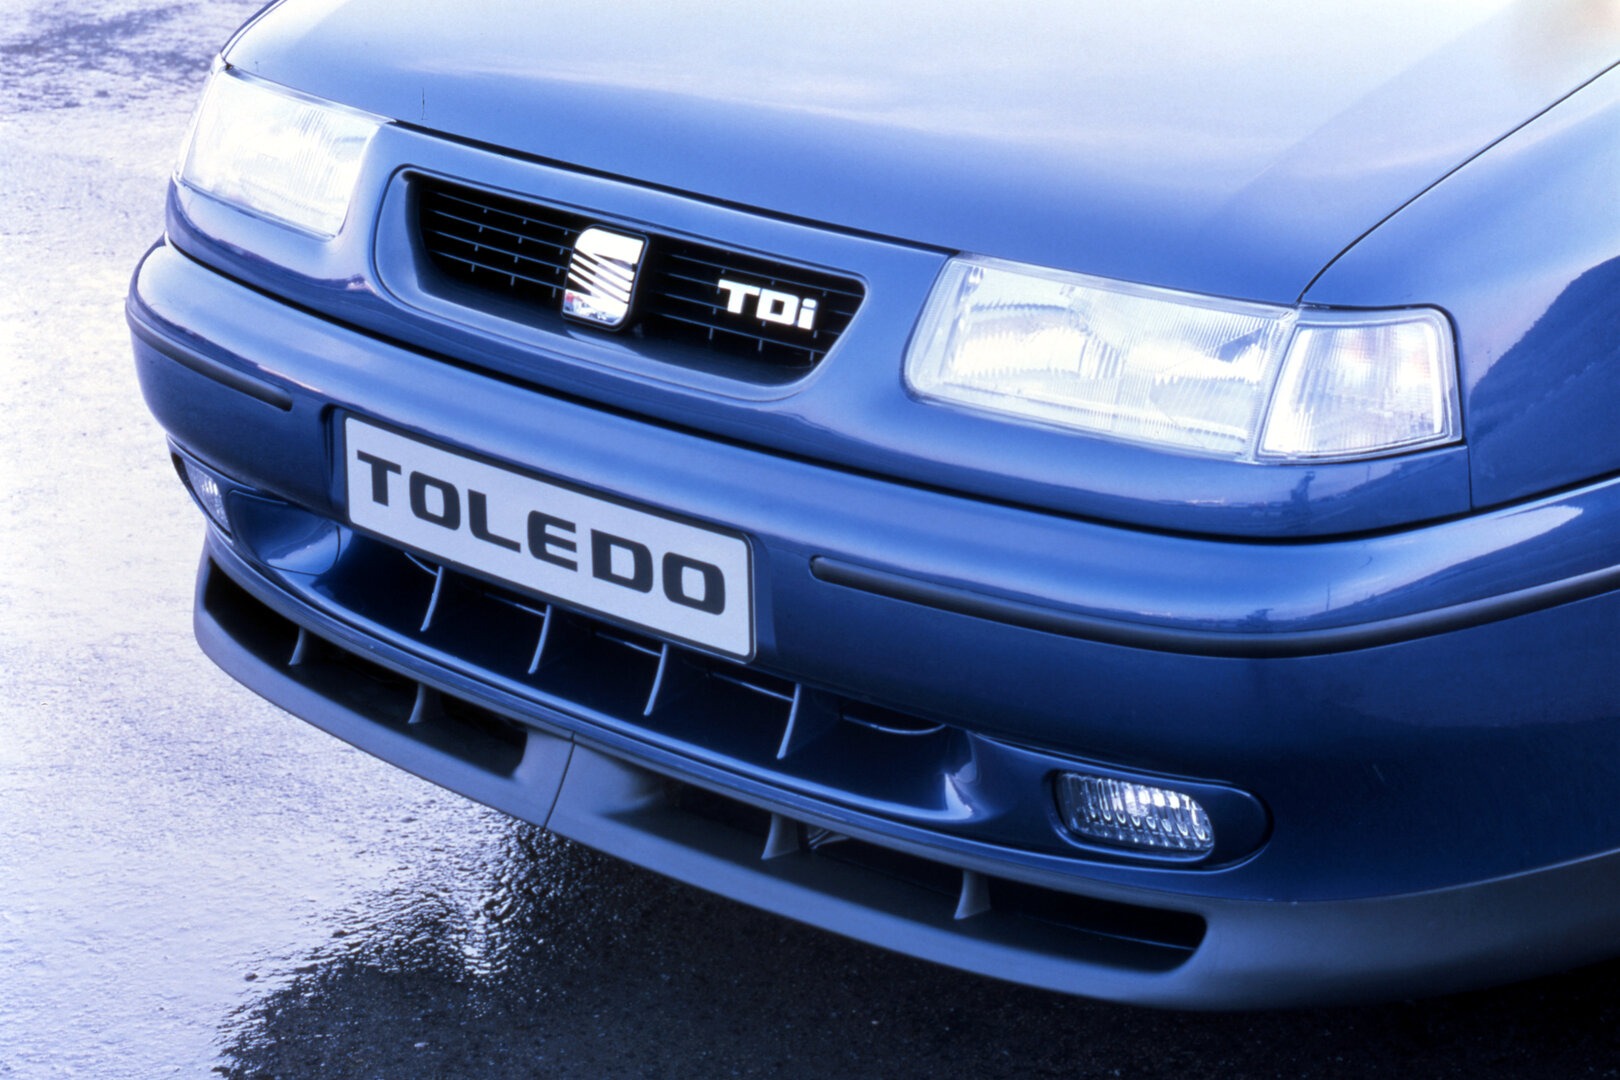 SEAT Toledo TDI frontal 1L